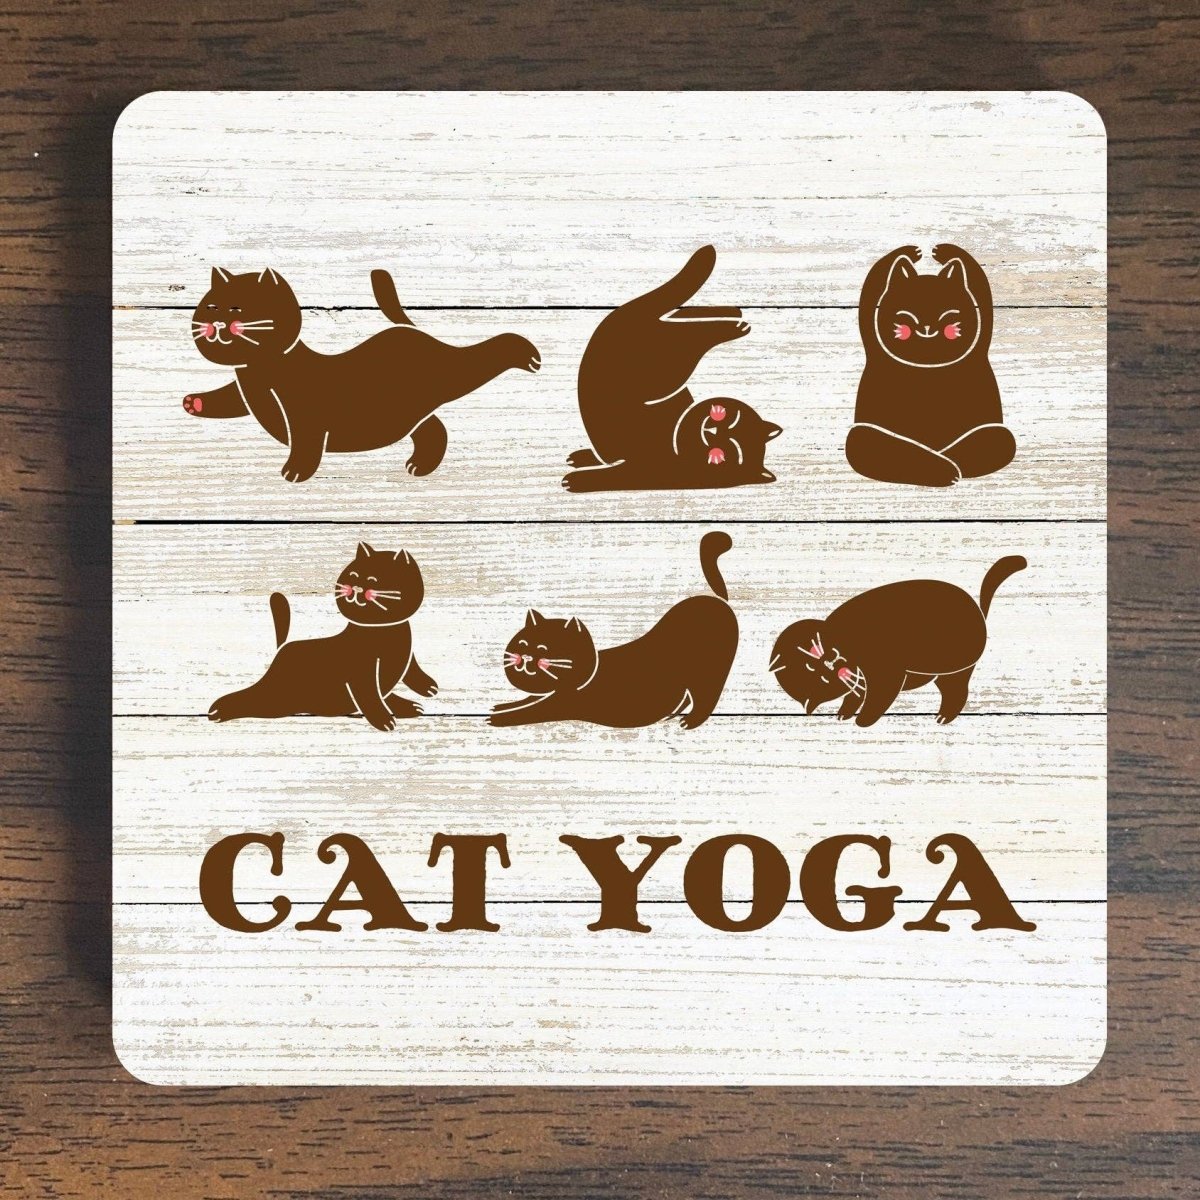 Magnet: Cat Yoga - #variant_color# - #variant_size# - #variant_option#